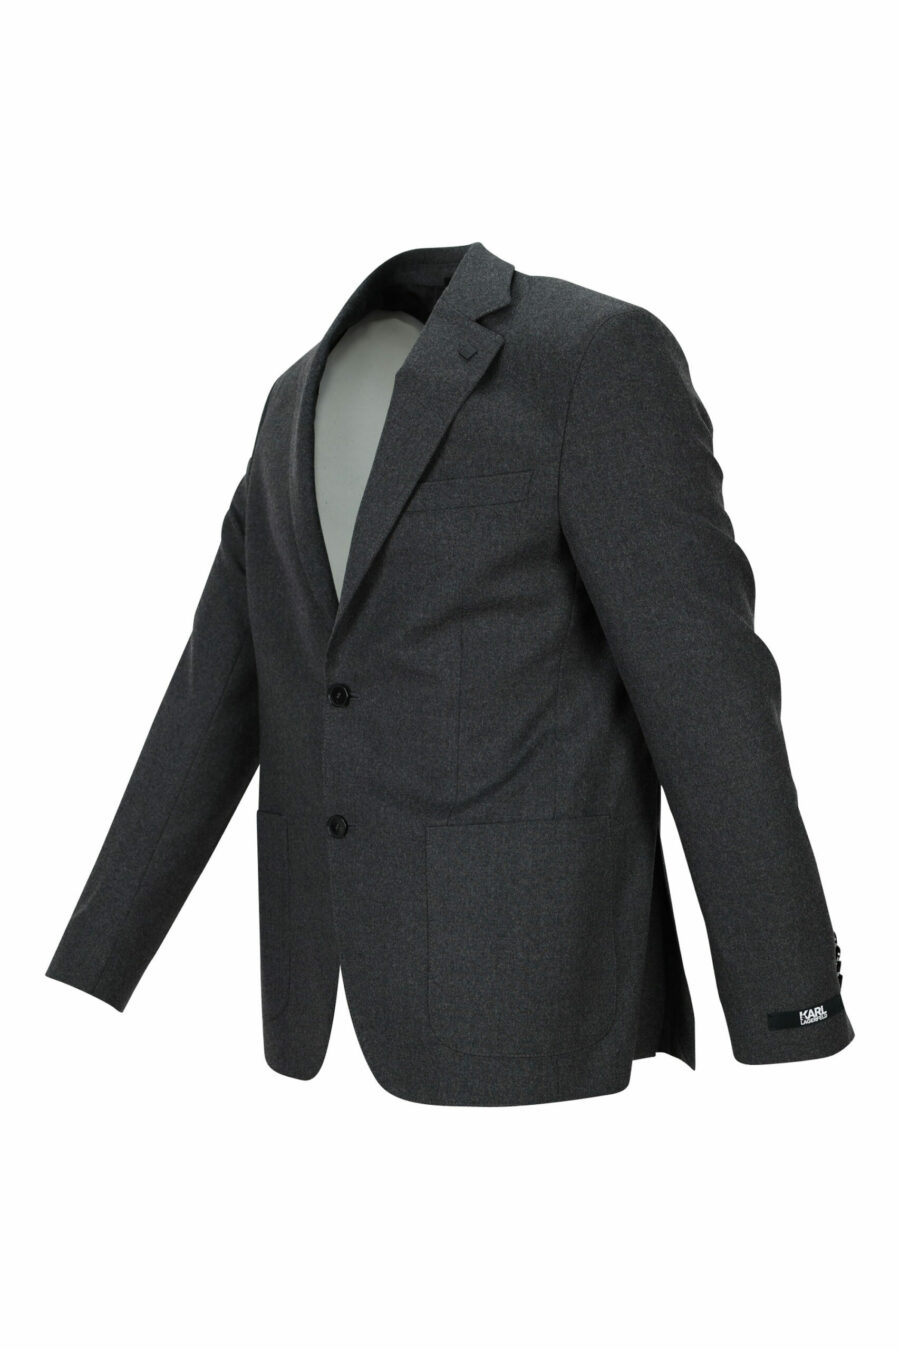 Veste de costume grise - 4062226351614 1 échelle